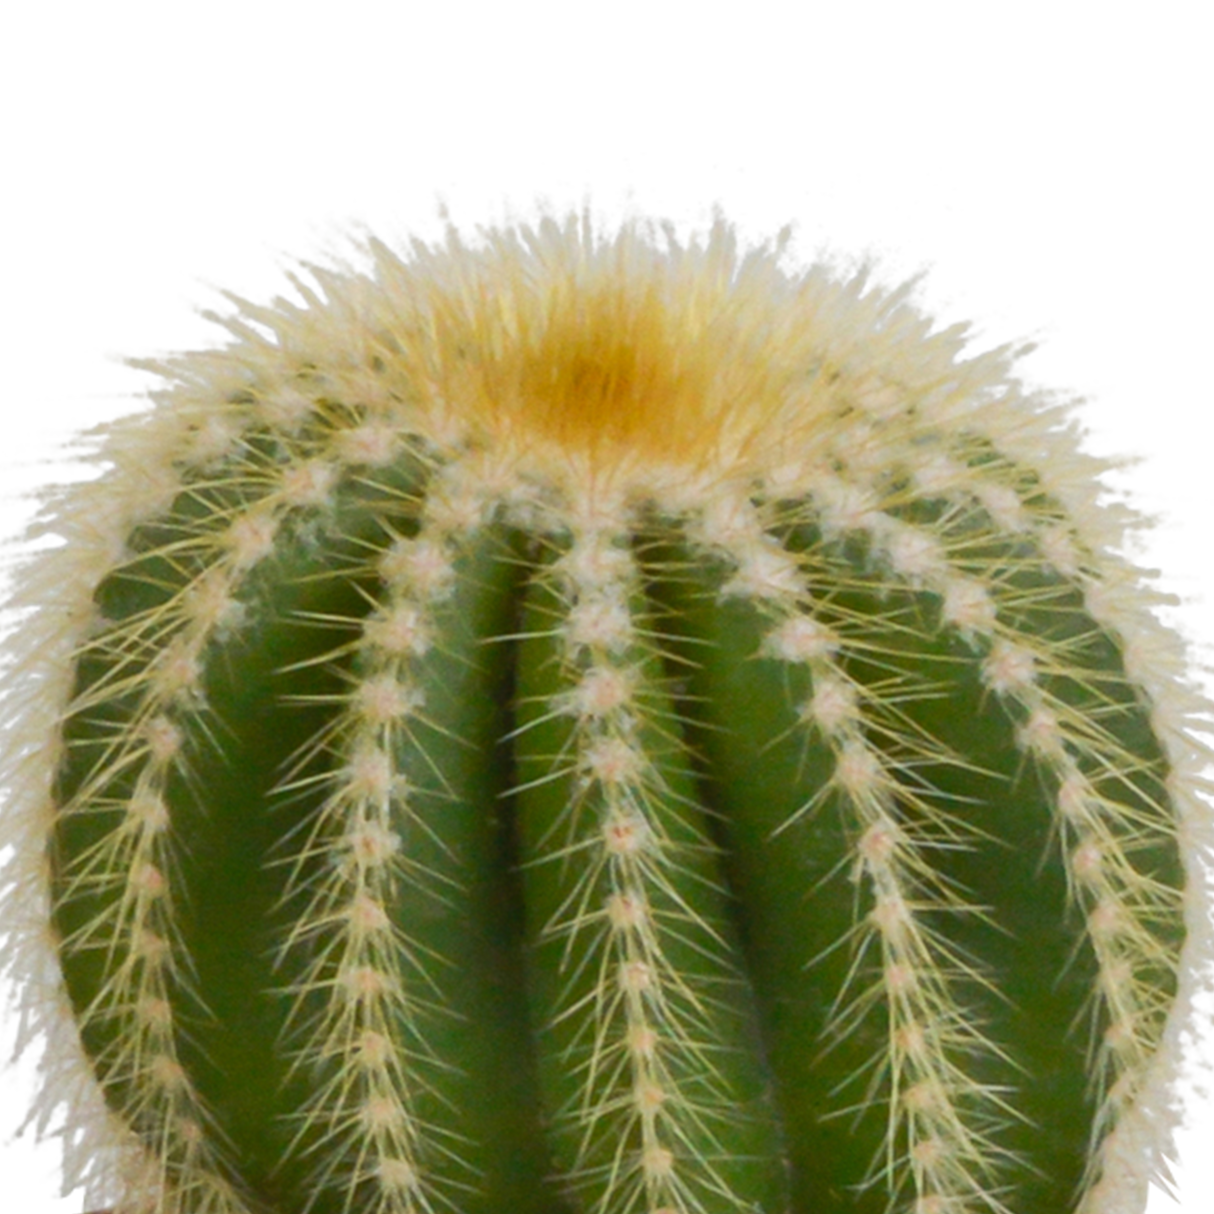 Coffret cadeau cactus et ses caches-pots terracotta - Lot de 3 plantes, h16cm